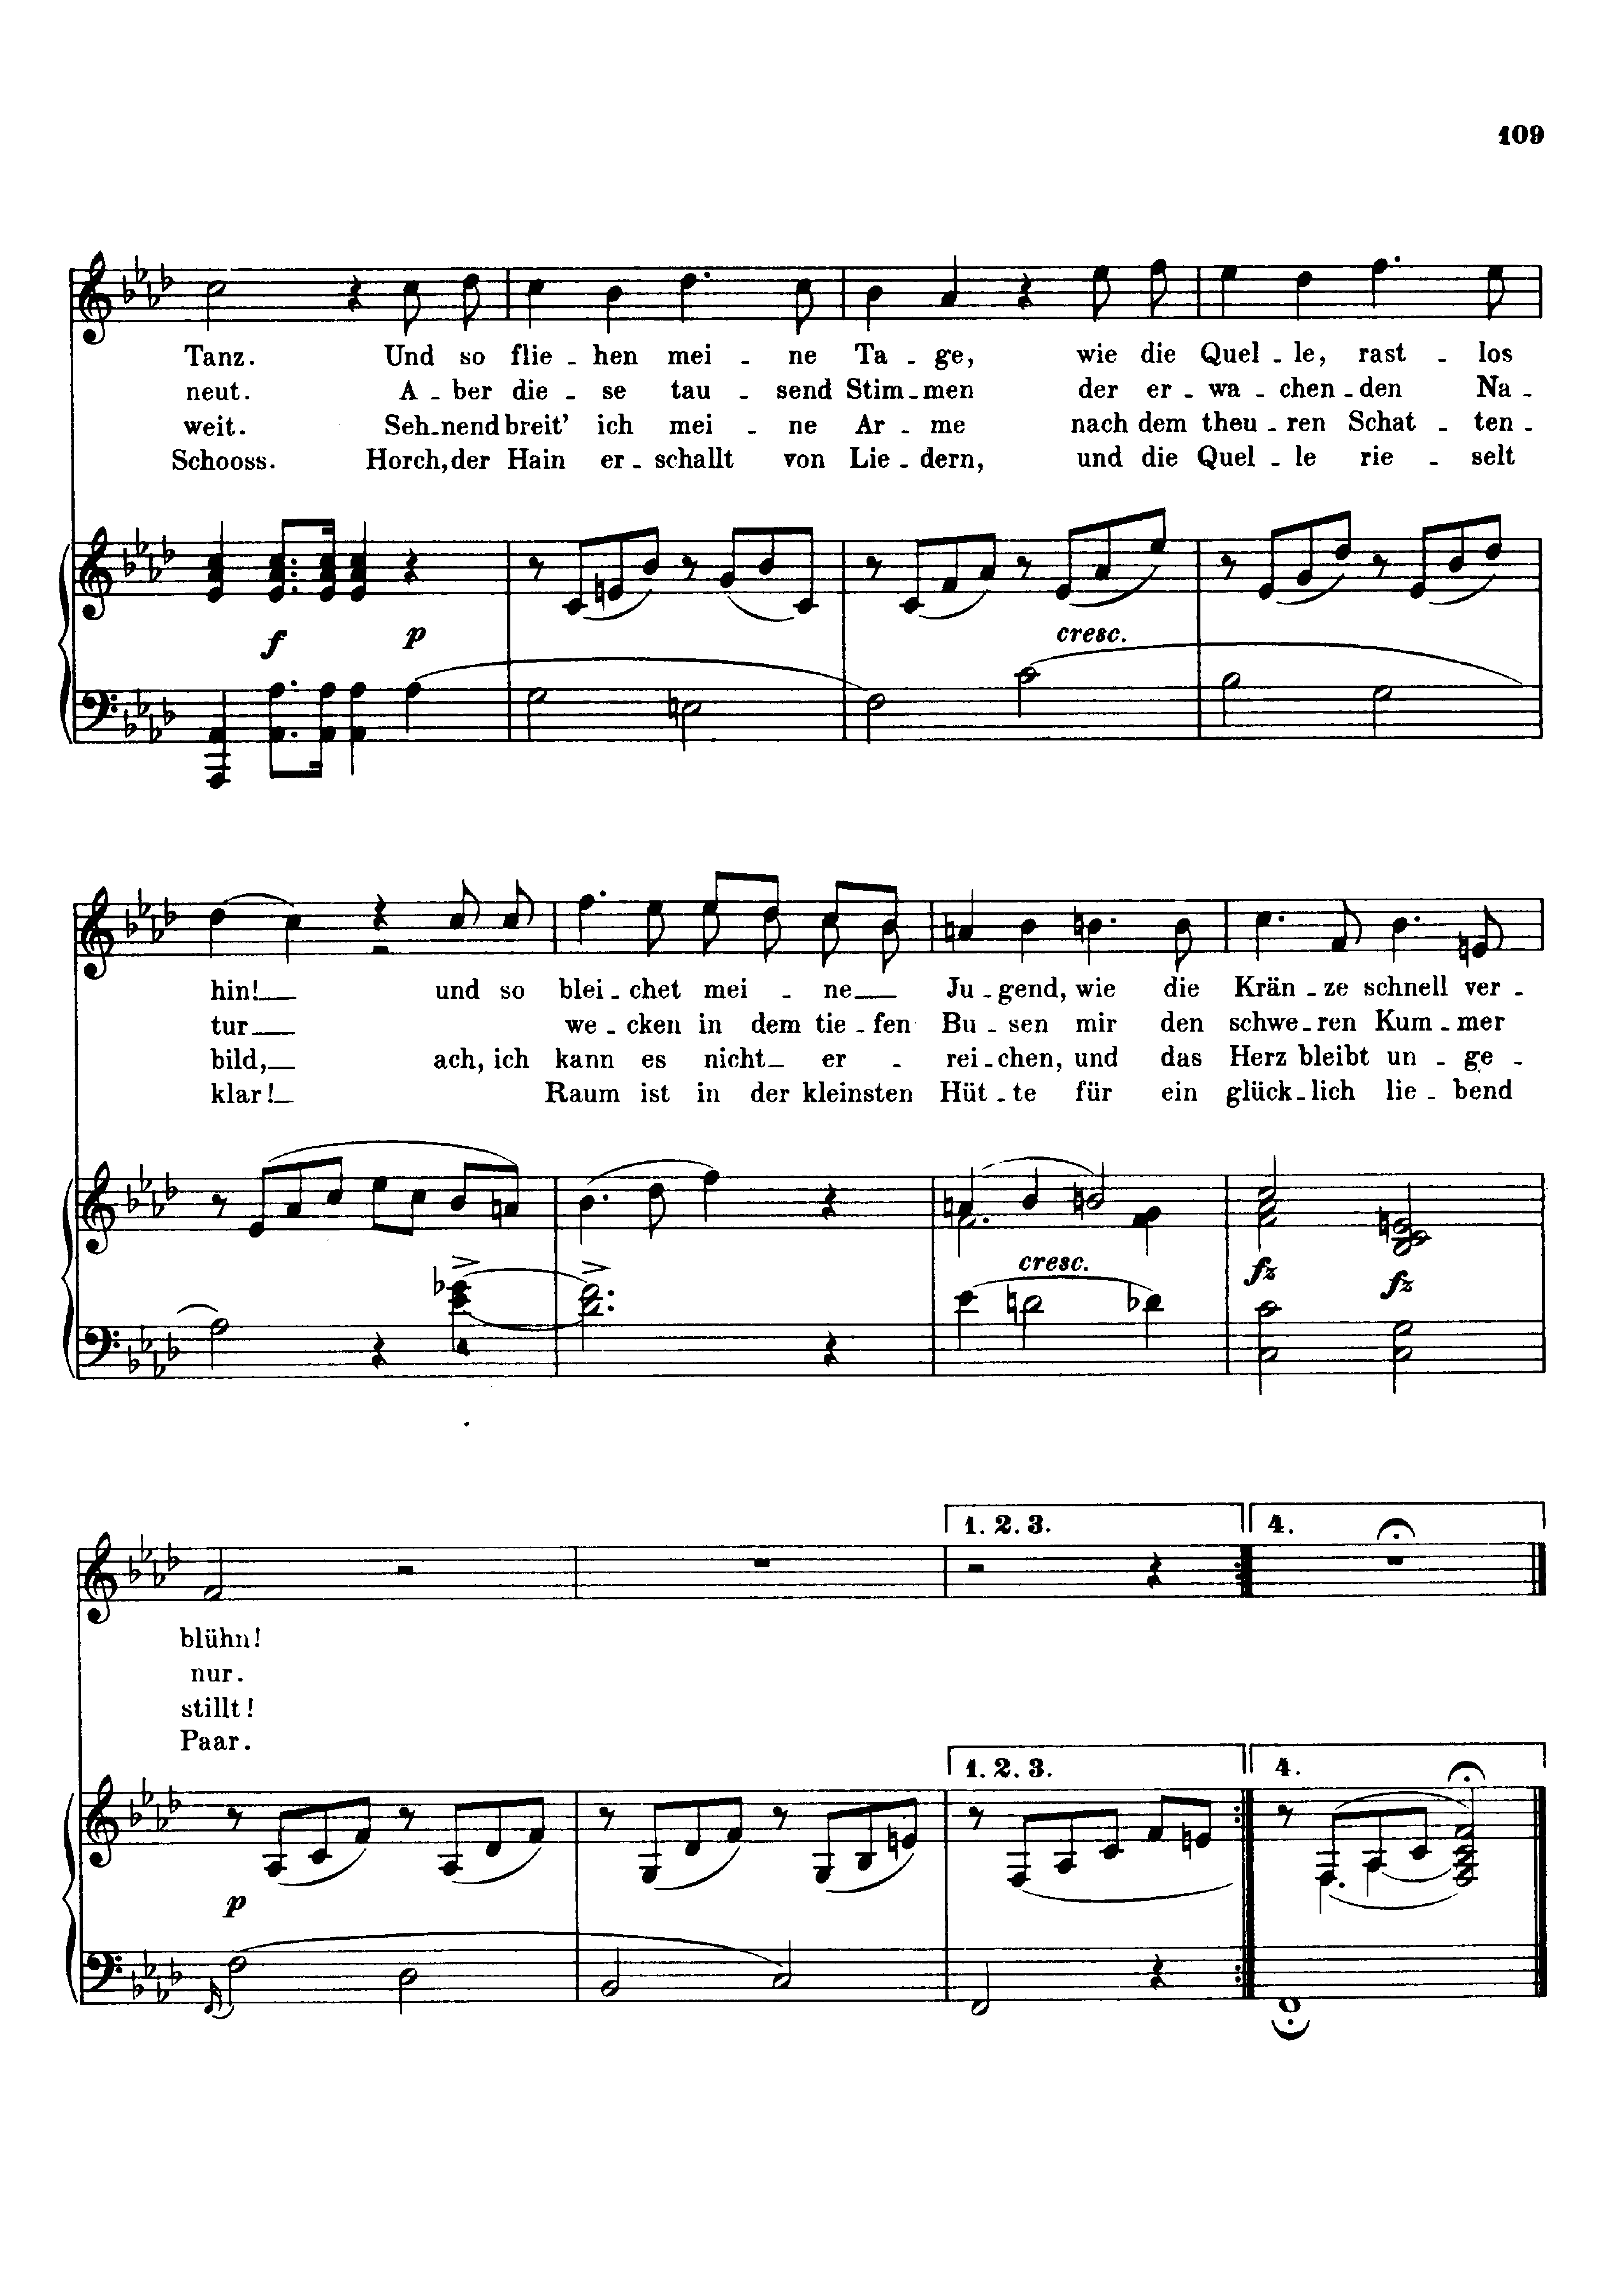 Schubert, Franz - Der Jungling am Bache, D.192 Sheet music for Voice ...